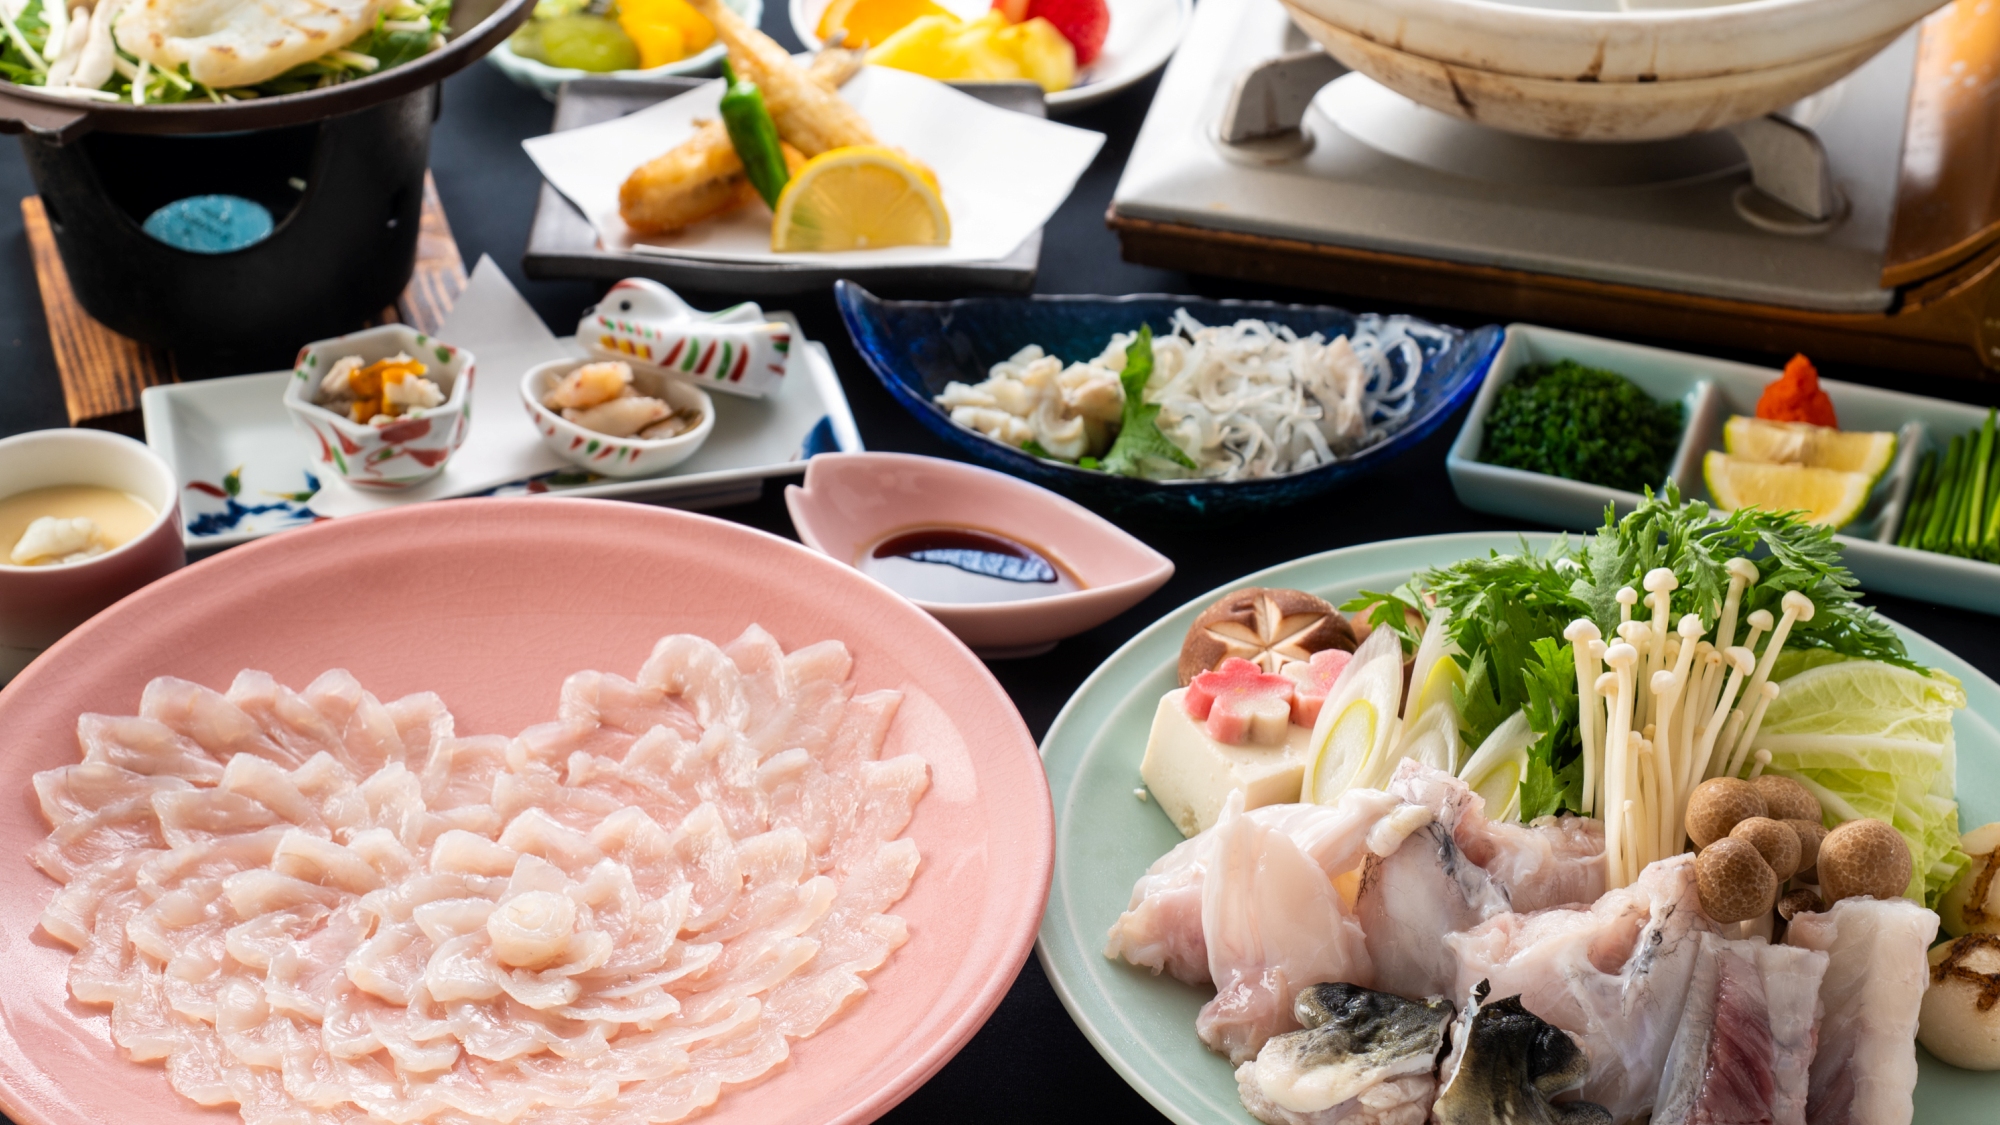 【ふく恋プラン】淡いピンクの萩焼のお皿にふく刺しをハート型に盛り付け